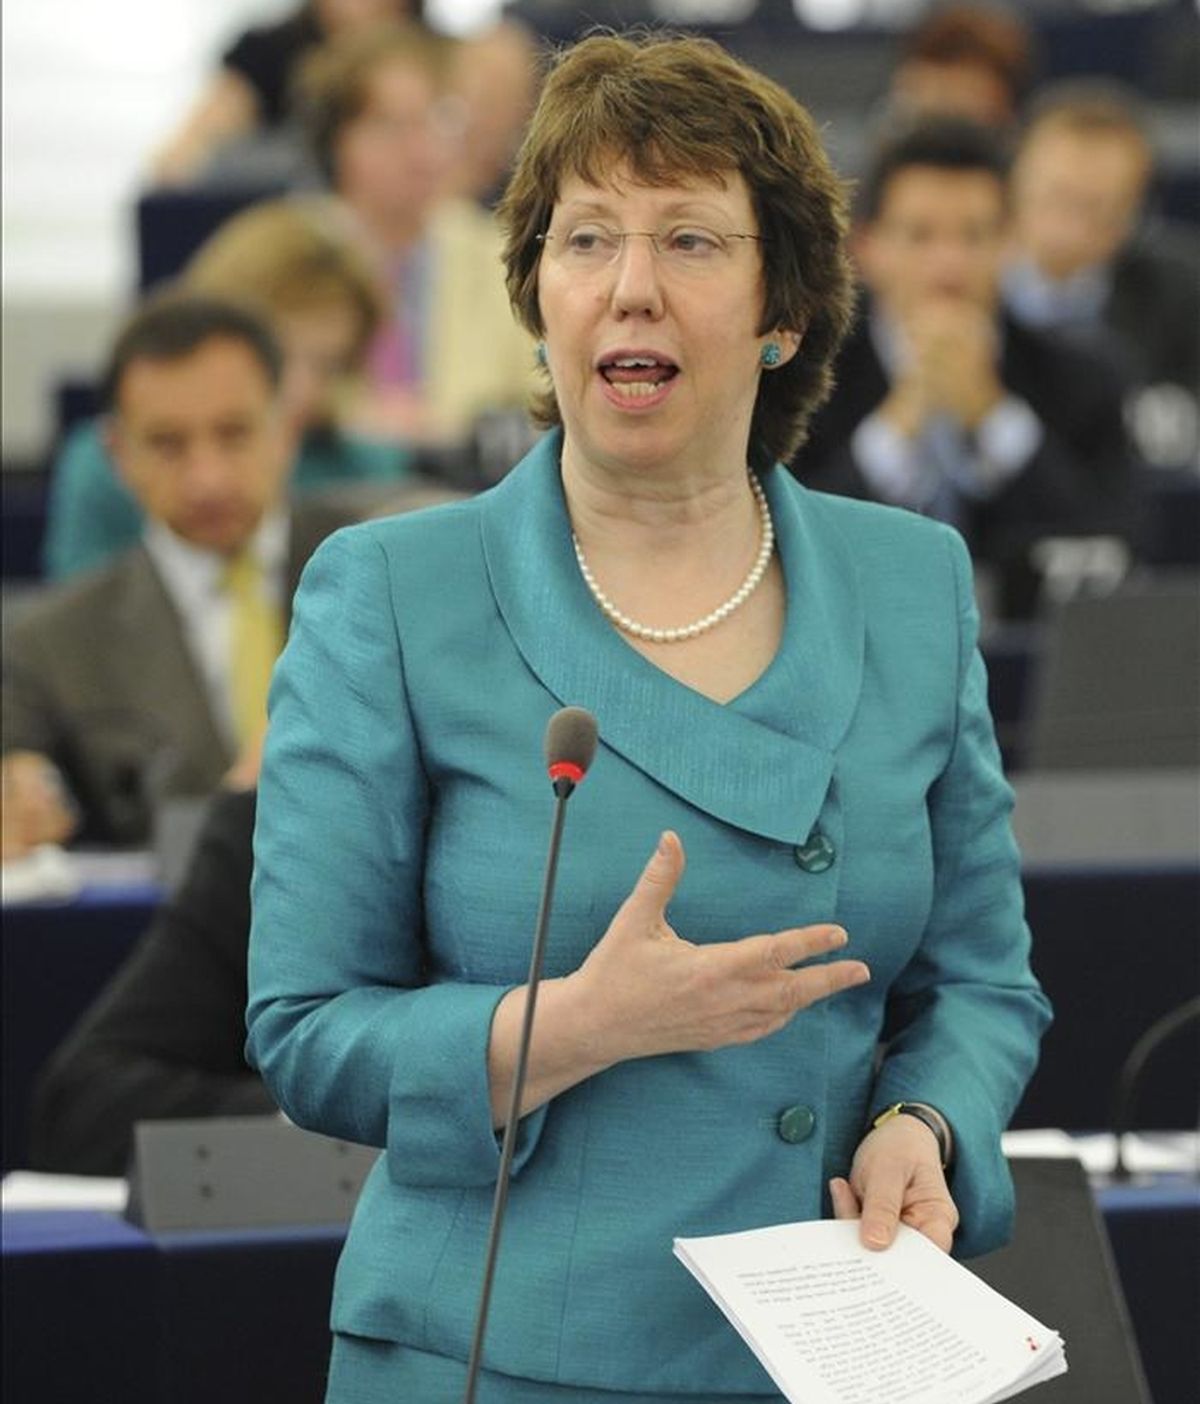 La alta representante europea para la política Exterior y de Seguridad de la UE, Catherine Ashton, participa en la sesión plenaria del Parlamento Europeo celebrada hoy, miércoles 11 de mayo de 2011 en Estrasburgo (Francia). EFE